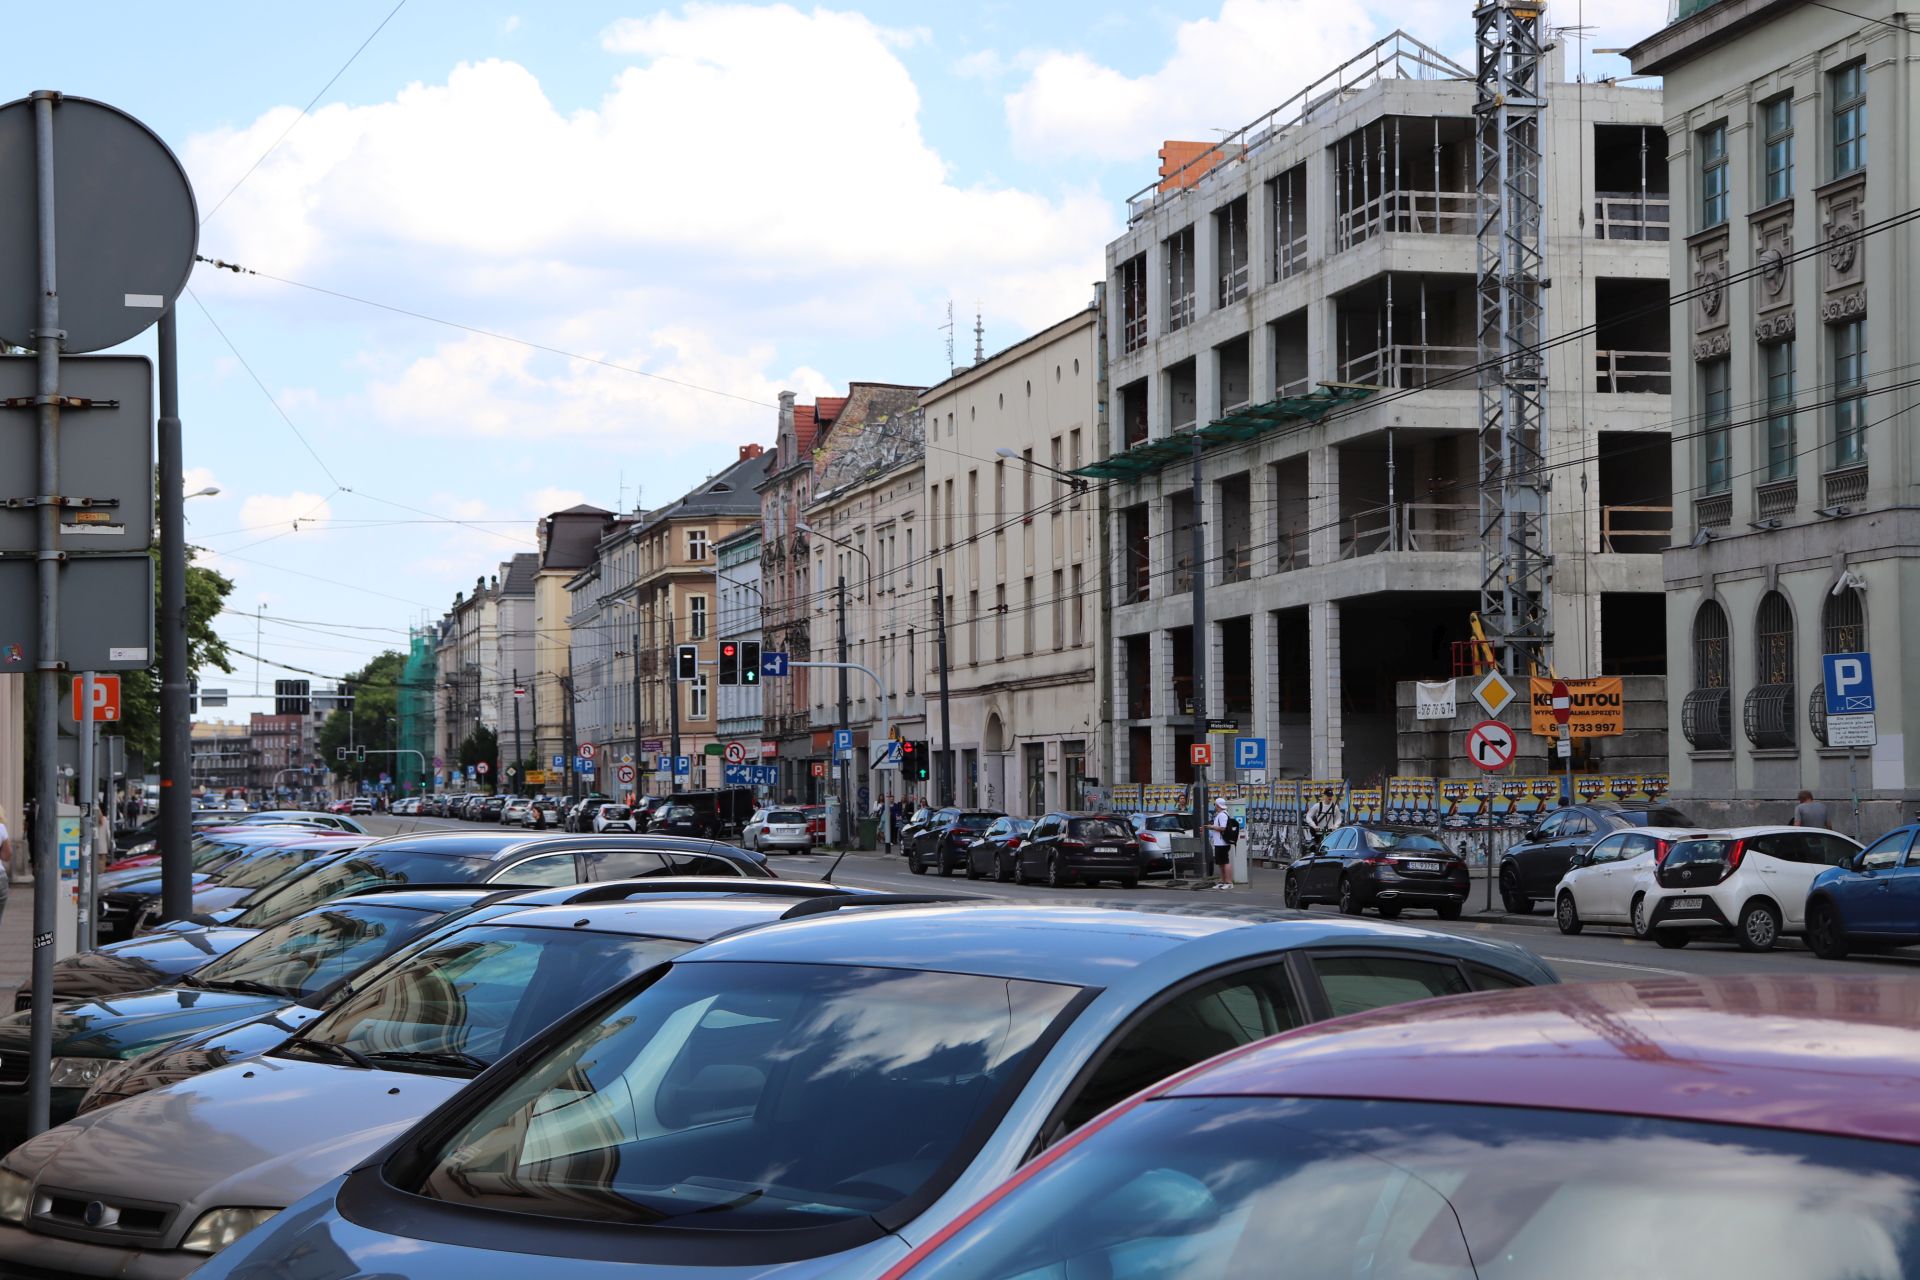 Fot. Mateusz Terech/WKATOWICACH.eu. Parkingi przy ulicy Warszawskiej wykorzystuje wielu kierowców. Niemal cały czas wszystkie miejsca parkingowe są zajęte